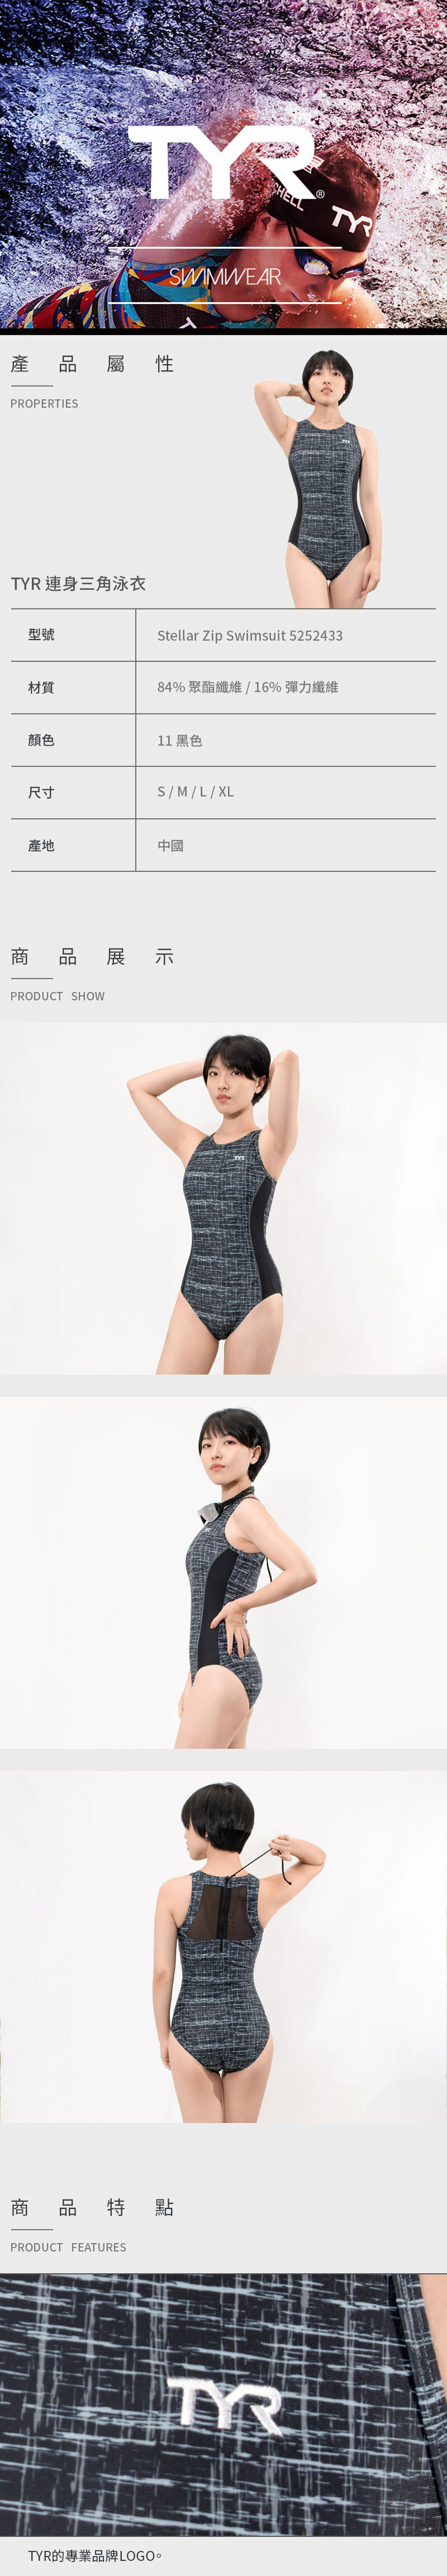 【美國TYR】連身中叉三角泳衣 Stellar Zip Swimsuit